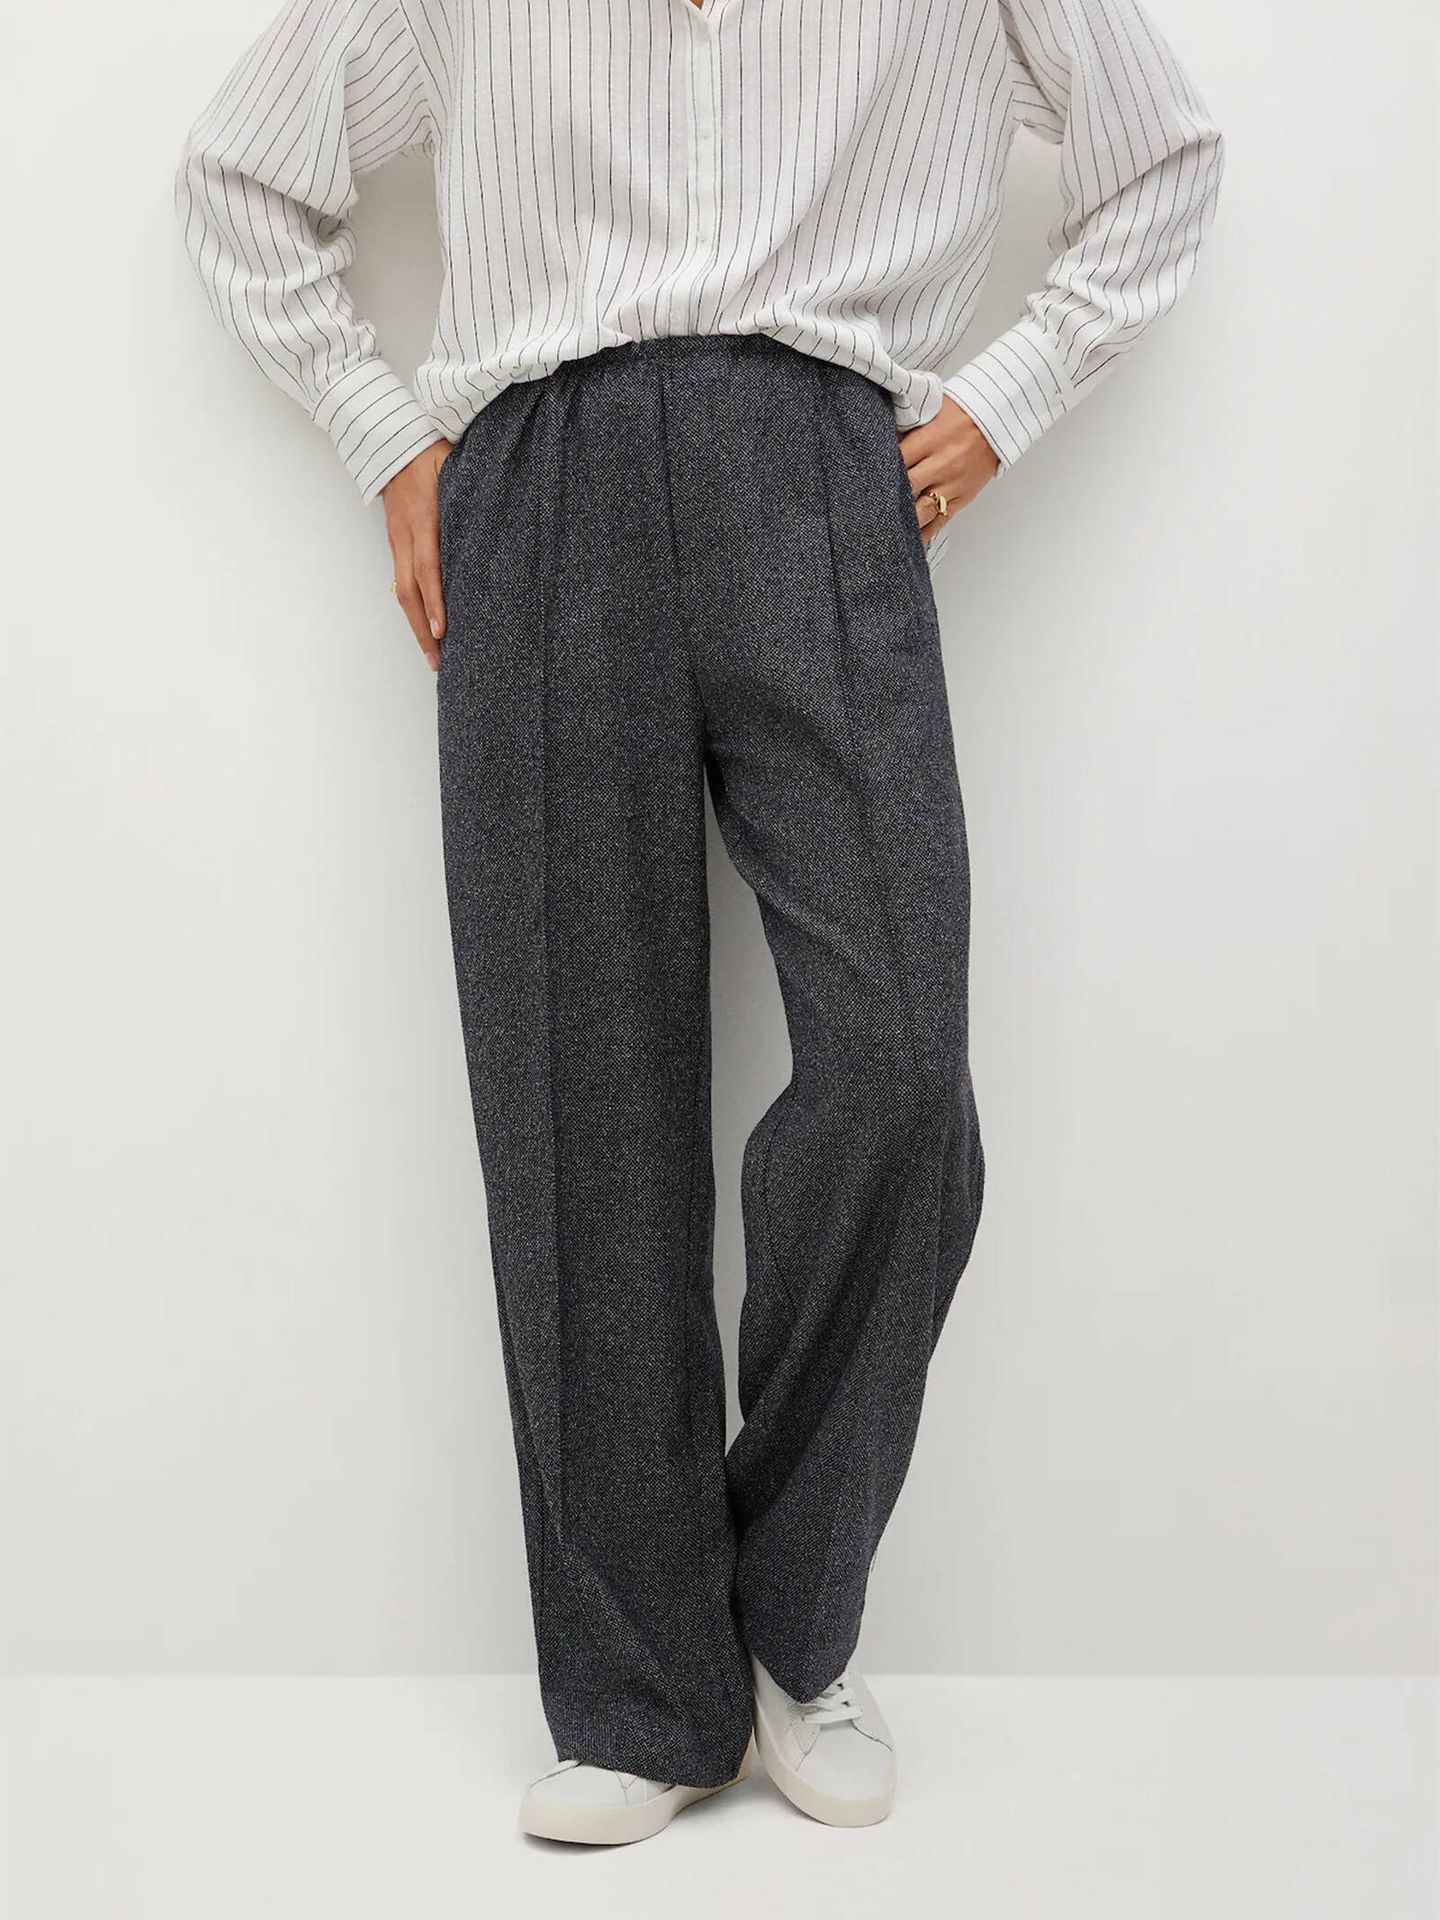 Mango Outlet vende un pantalón de vestir ideal para ir al trabajo y absolutamente cómodo. (Cortesía)